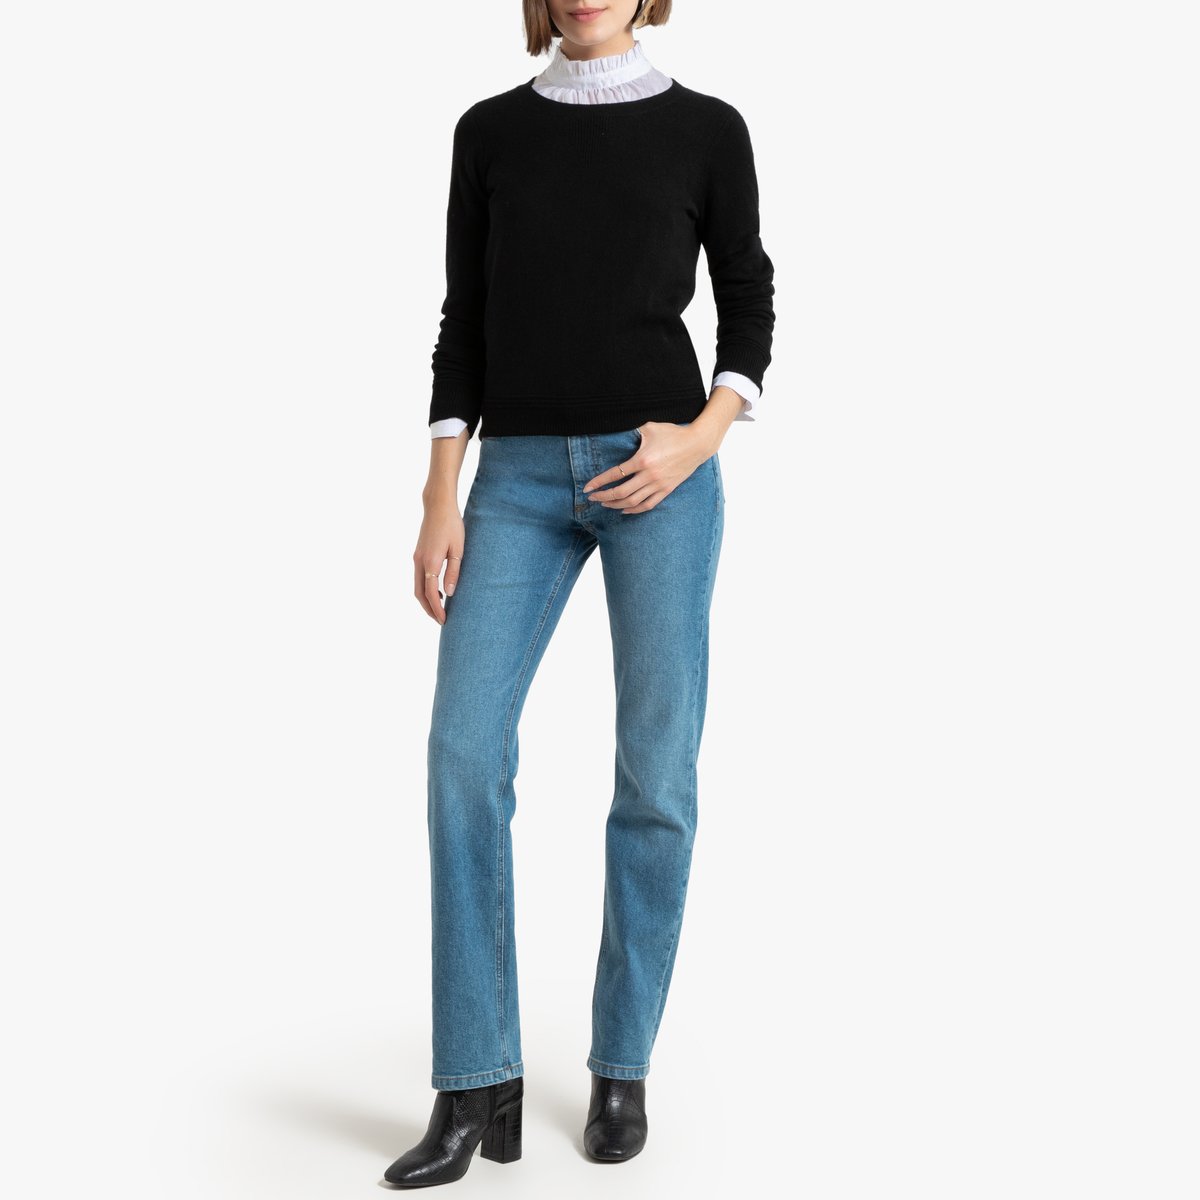 Пуловер La Redoute С круглым вырезом из кашемира XL черный, размер XL - фото 2